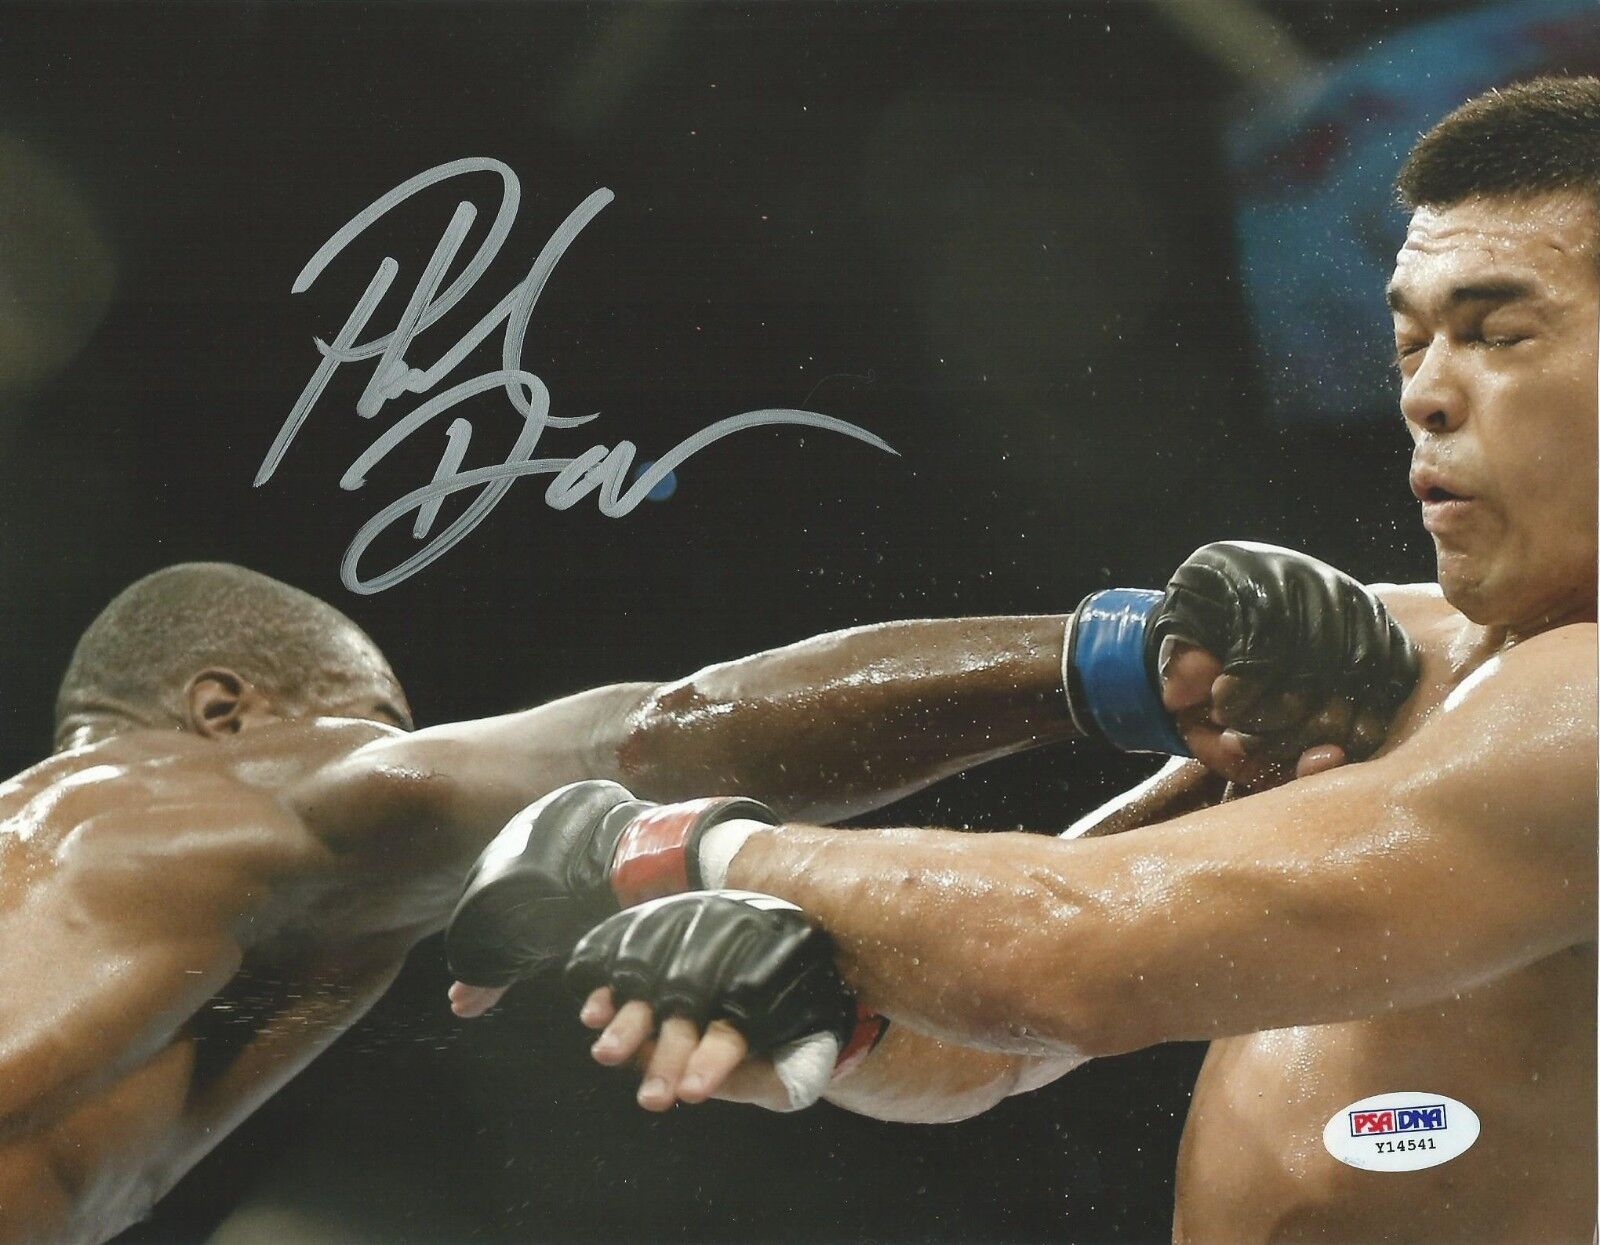 Phil Davis Signed UFC 8x10 Photo Poster painting PSA/DNA COA Picture Autograph 163 Lyoto Machida